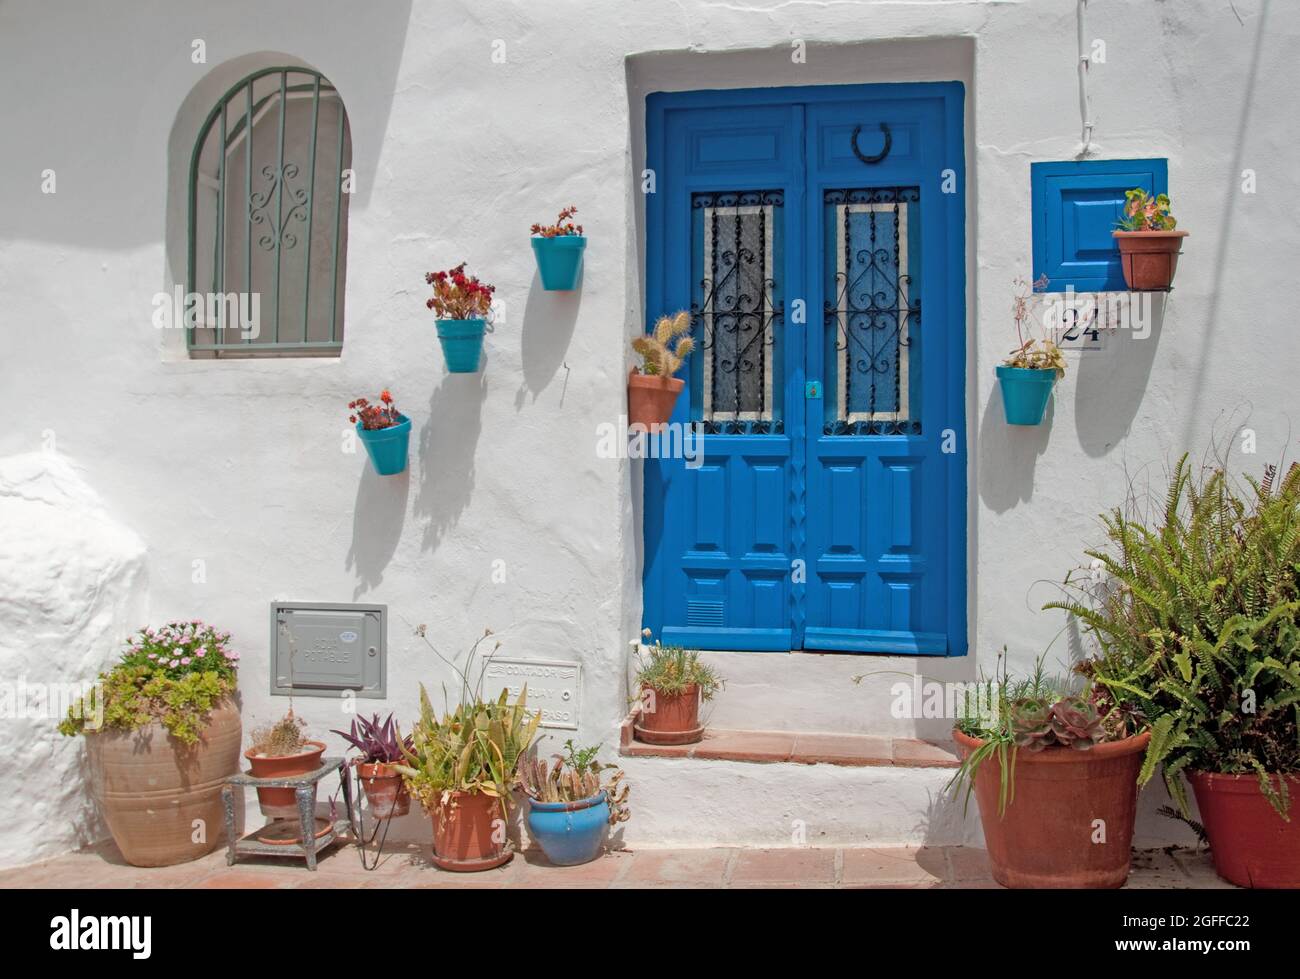 Porte avec plantes en pot, Frigiliana, province de Malaga, Andalousie, Espagne. Frigiliana est une petite ville près de Nerja mais dans les montagnes Banque D'Images